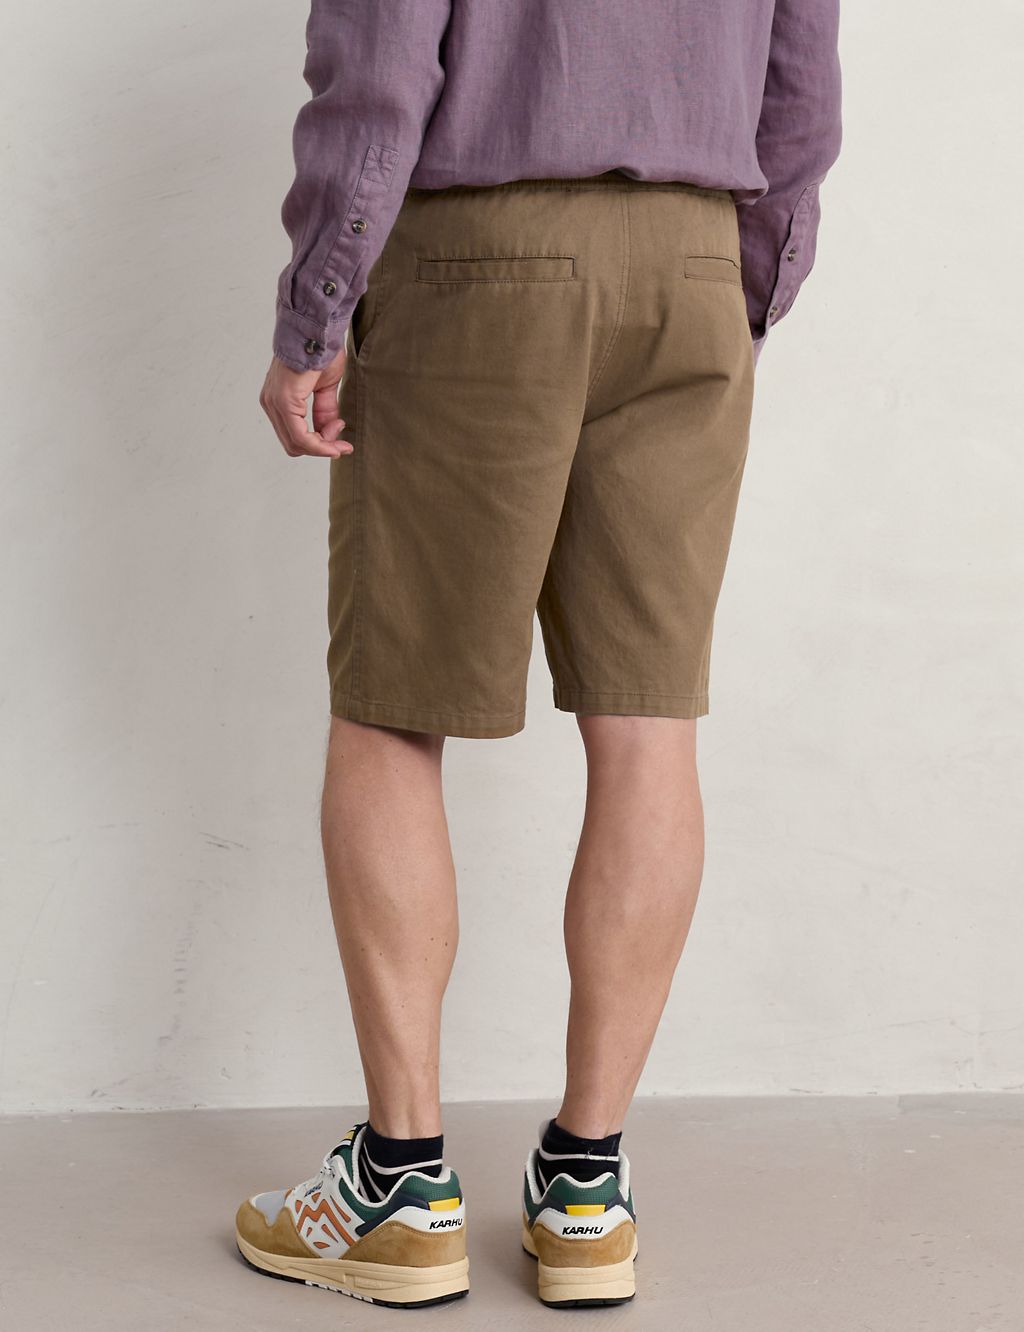 Linen Blend Shorts 2 of 5